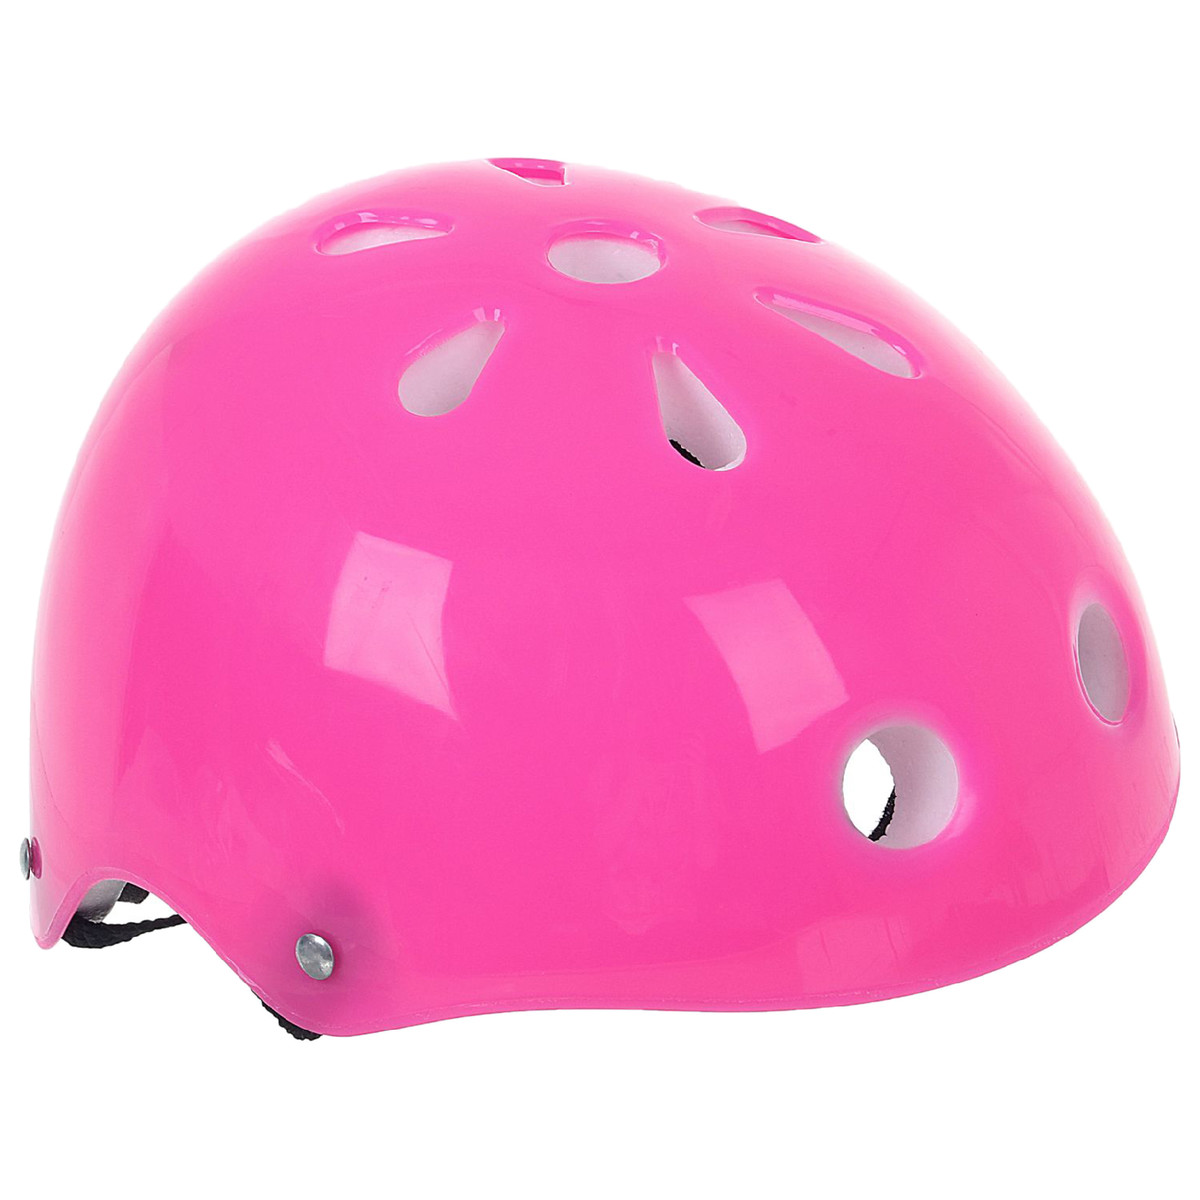 Шлем защитный детский onlytop ot-s507, обхват 55 см, цвет розовый шлем защитный sportex jr f11720 1 голубой